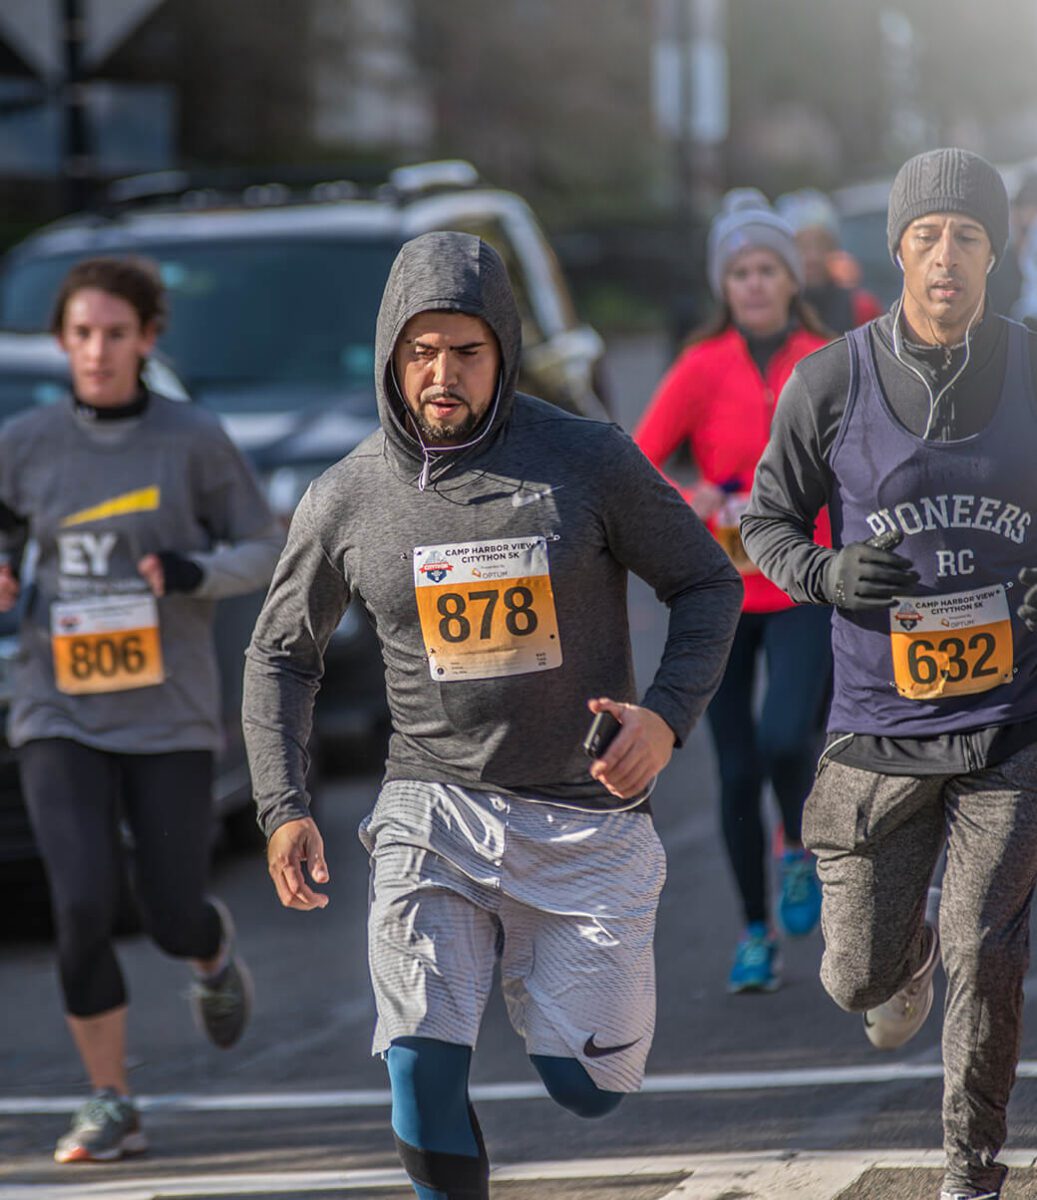 5k runner in Boston